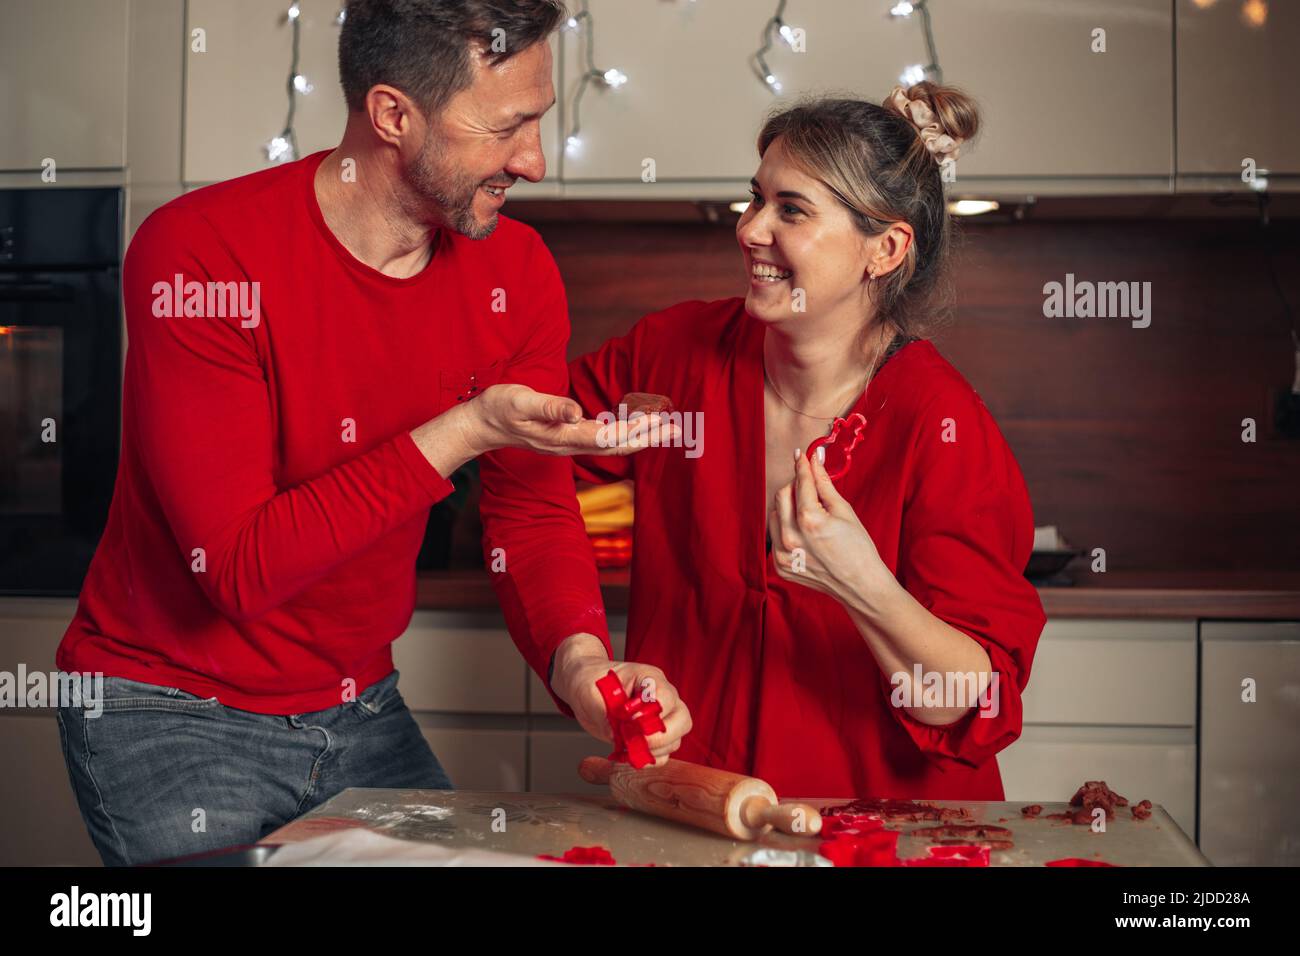 Junge nette Frau und Mann in roten Kleidern lachen fröhlich beim Backen von Keksen. Weihnachtsmomente, glückliches junges Paar. Startseite gemütliche Küche. Stockfoto